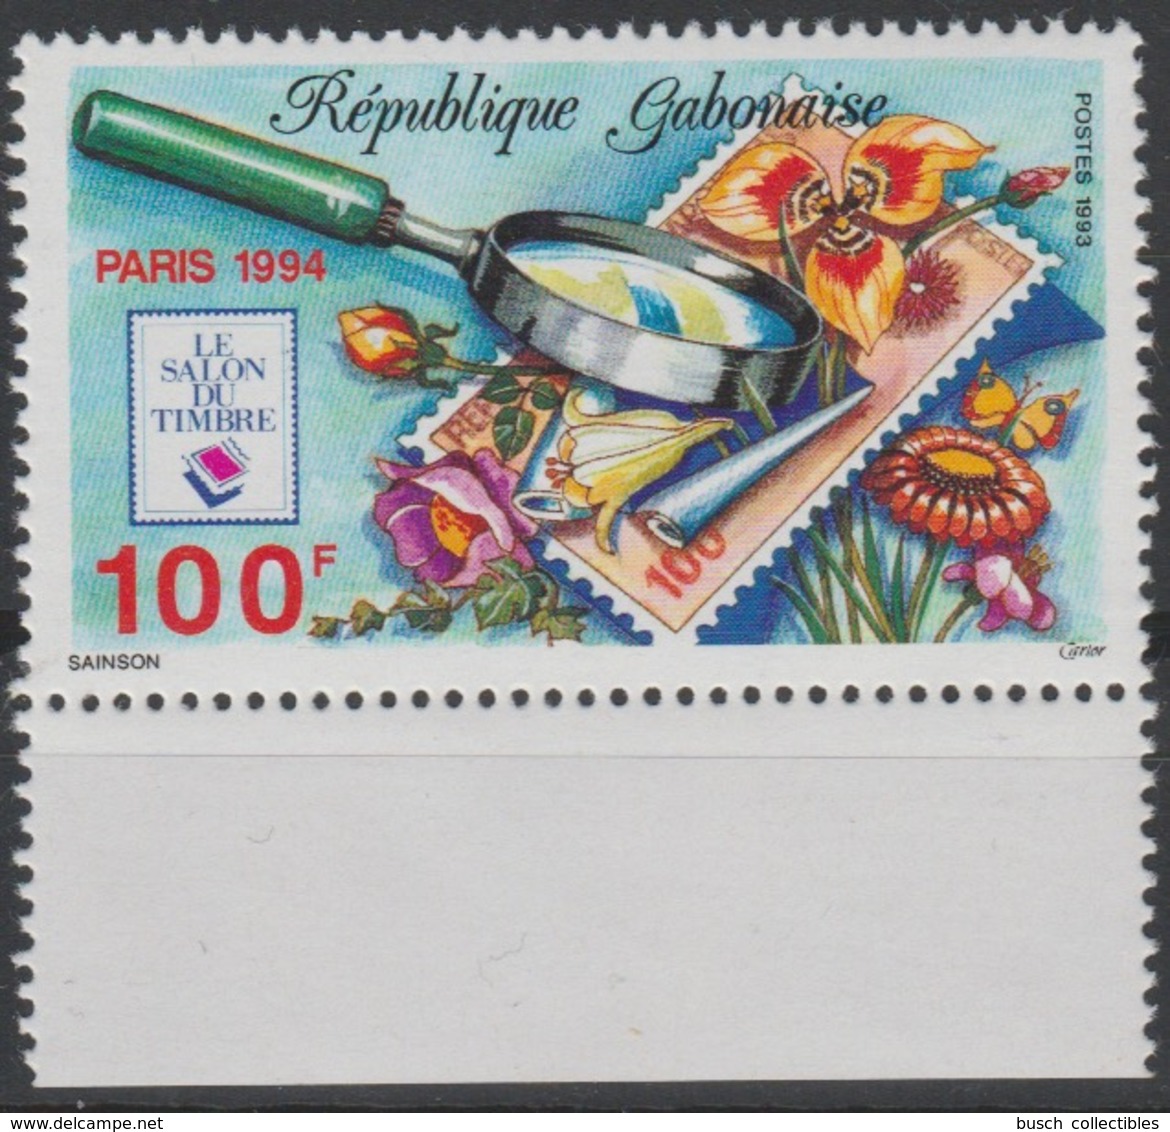 Gabon Gabun 1993 / 1994 Mi. 1159 Le Salon Du Timbre PARIS Flowers Fleurs Blüten Blumen Flore Flora Stamp On Stamp RARE ! - Gabon